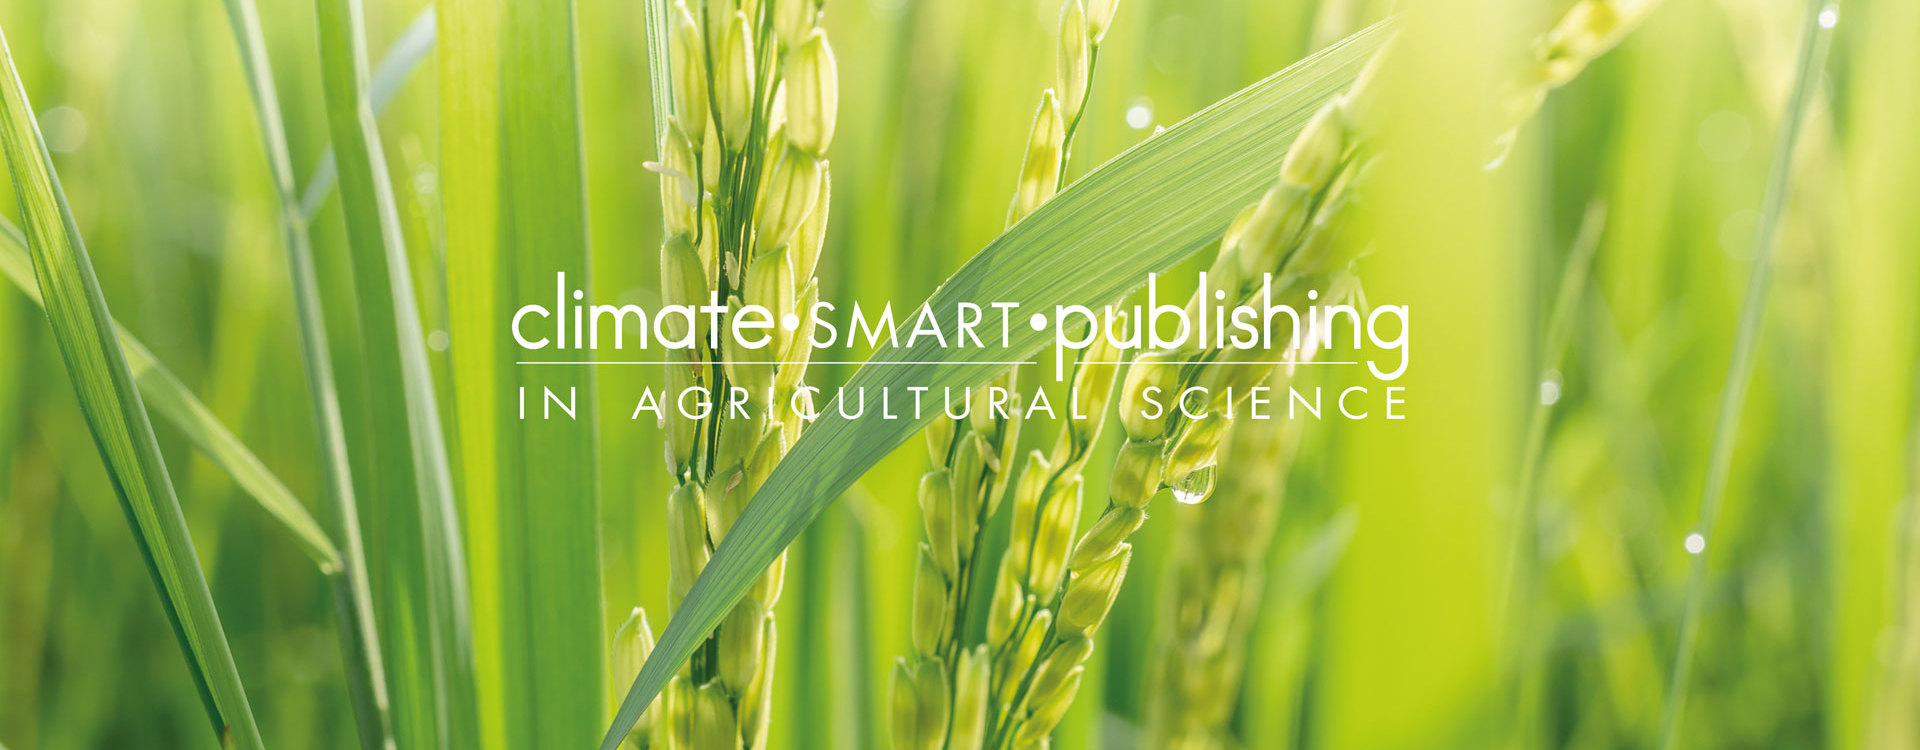 Climate smart publishing